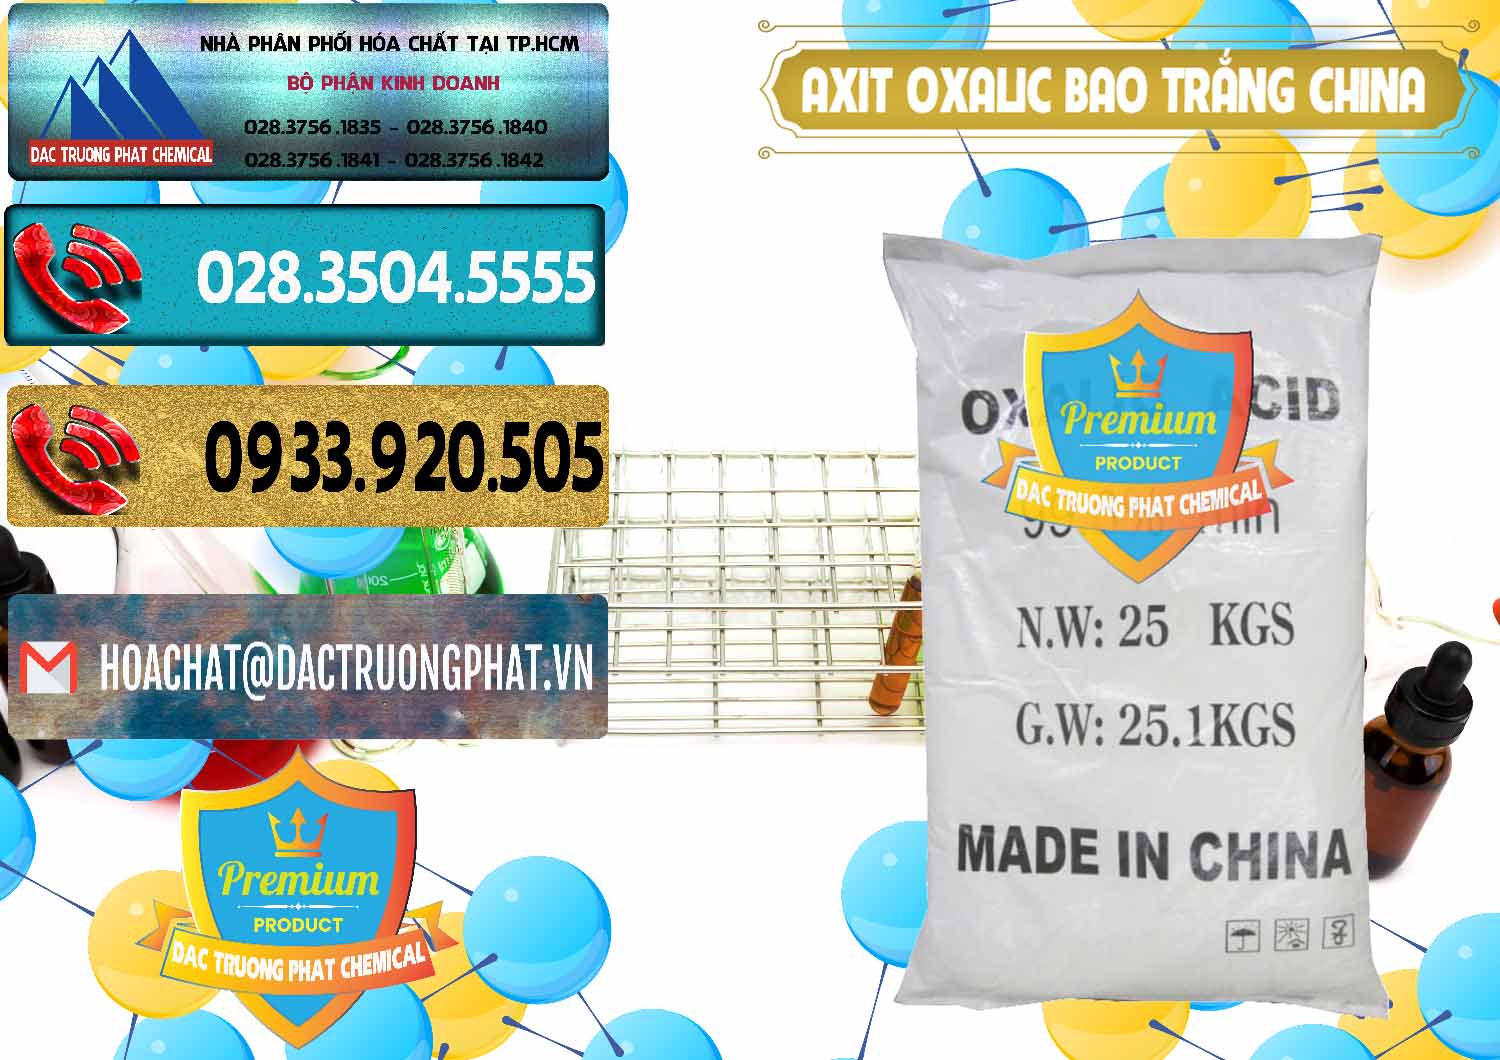 Cty cung cấp ( bán ) Acid Oxalic – Axit Oxalic 99.6% Bao Trắng Trung Quốc China - 0270 - Chuyên bán & cung cấp hóa chất tại TP.HCM - hoachatdetnhuom.com